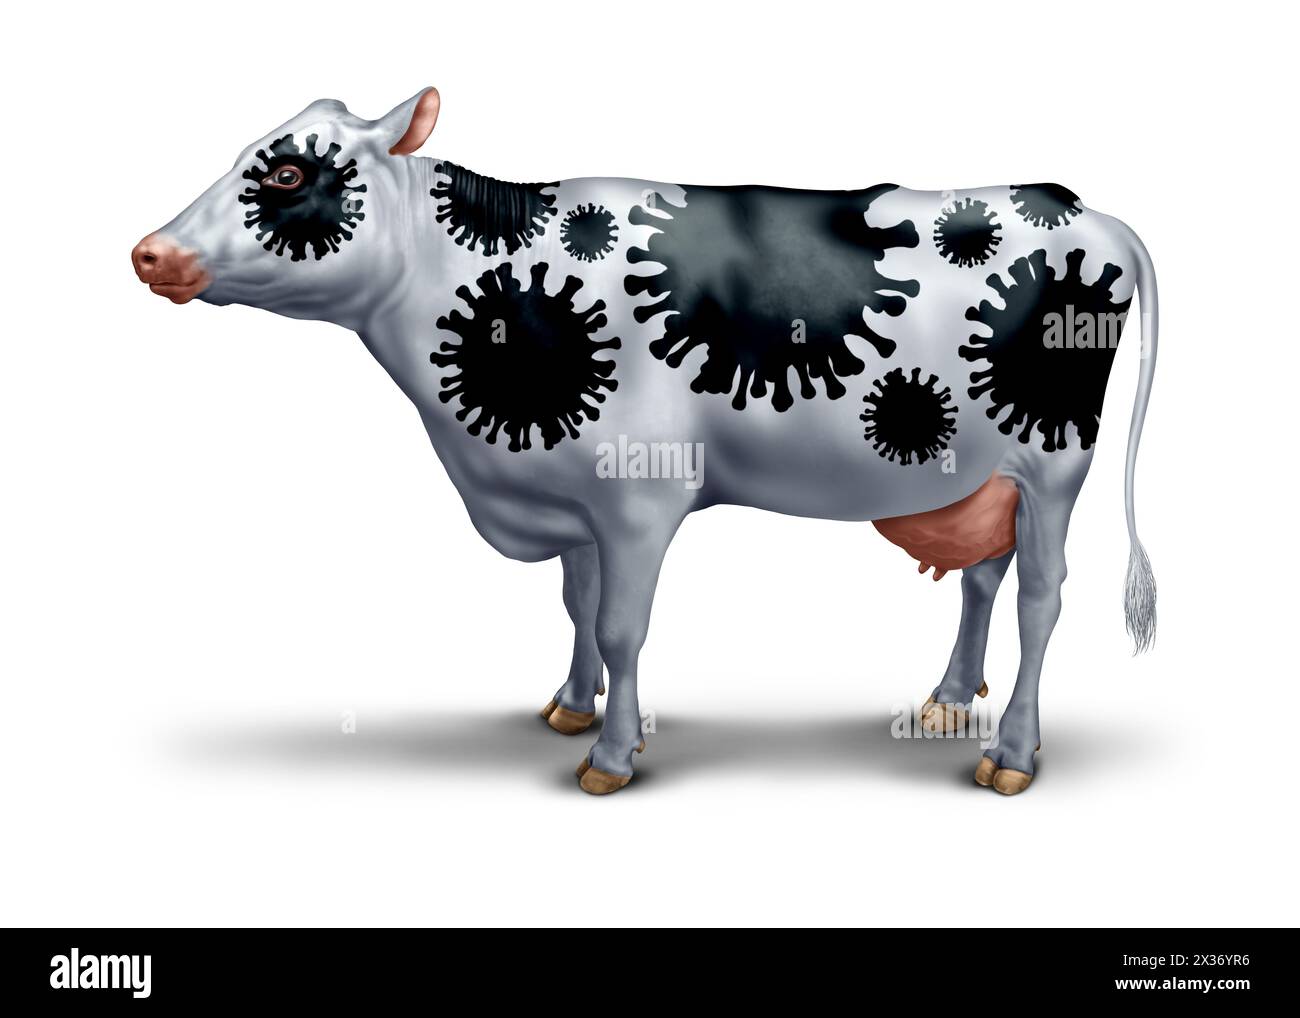 Focolaio di virus della mucca come simbolo del coronavirus bovino come simbolo di patologia agricola o gli effetti dell'influenza aviaria o aviaria come preoccupazione per la salute pubblica. Foto Stock